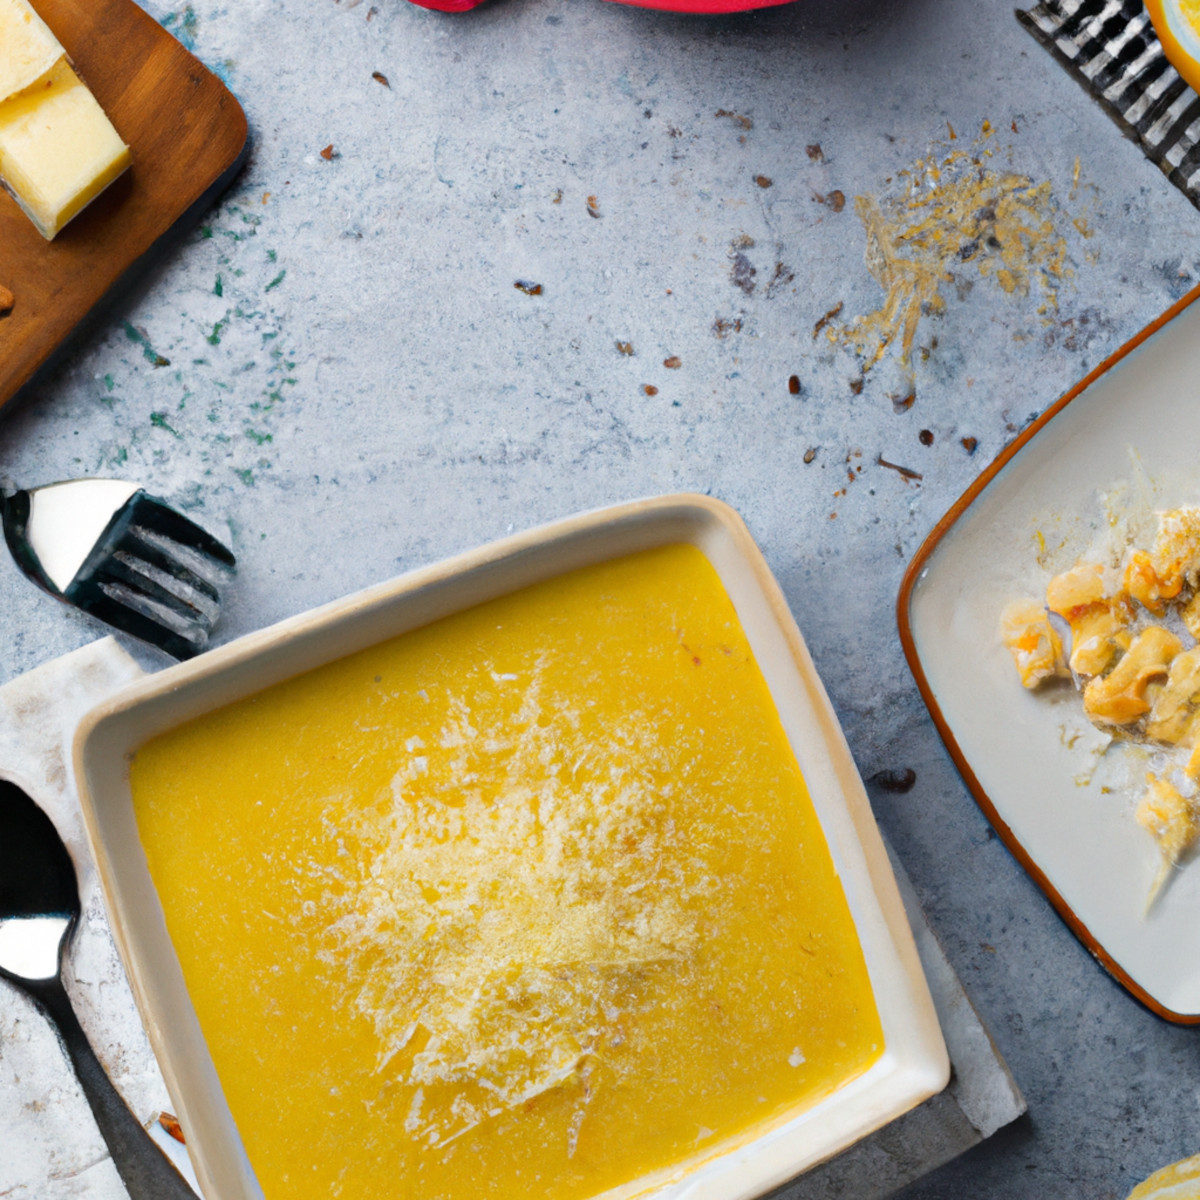 potato cheese soup